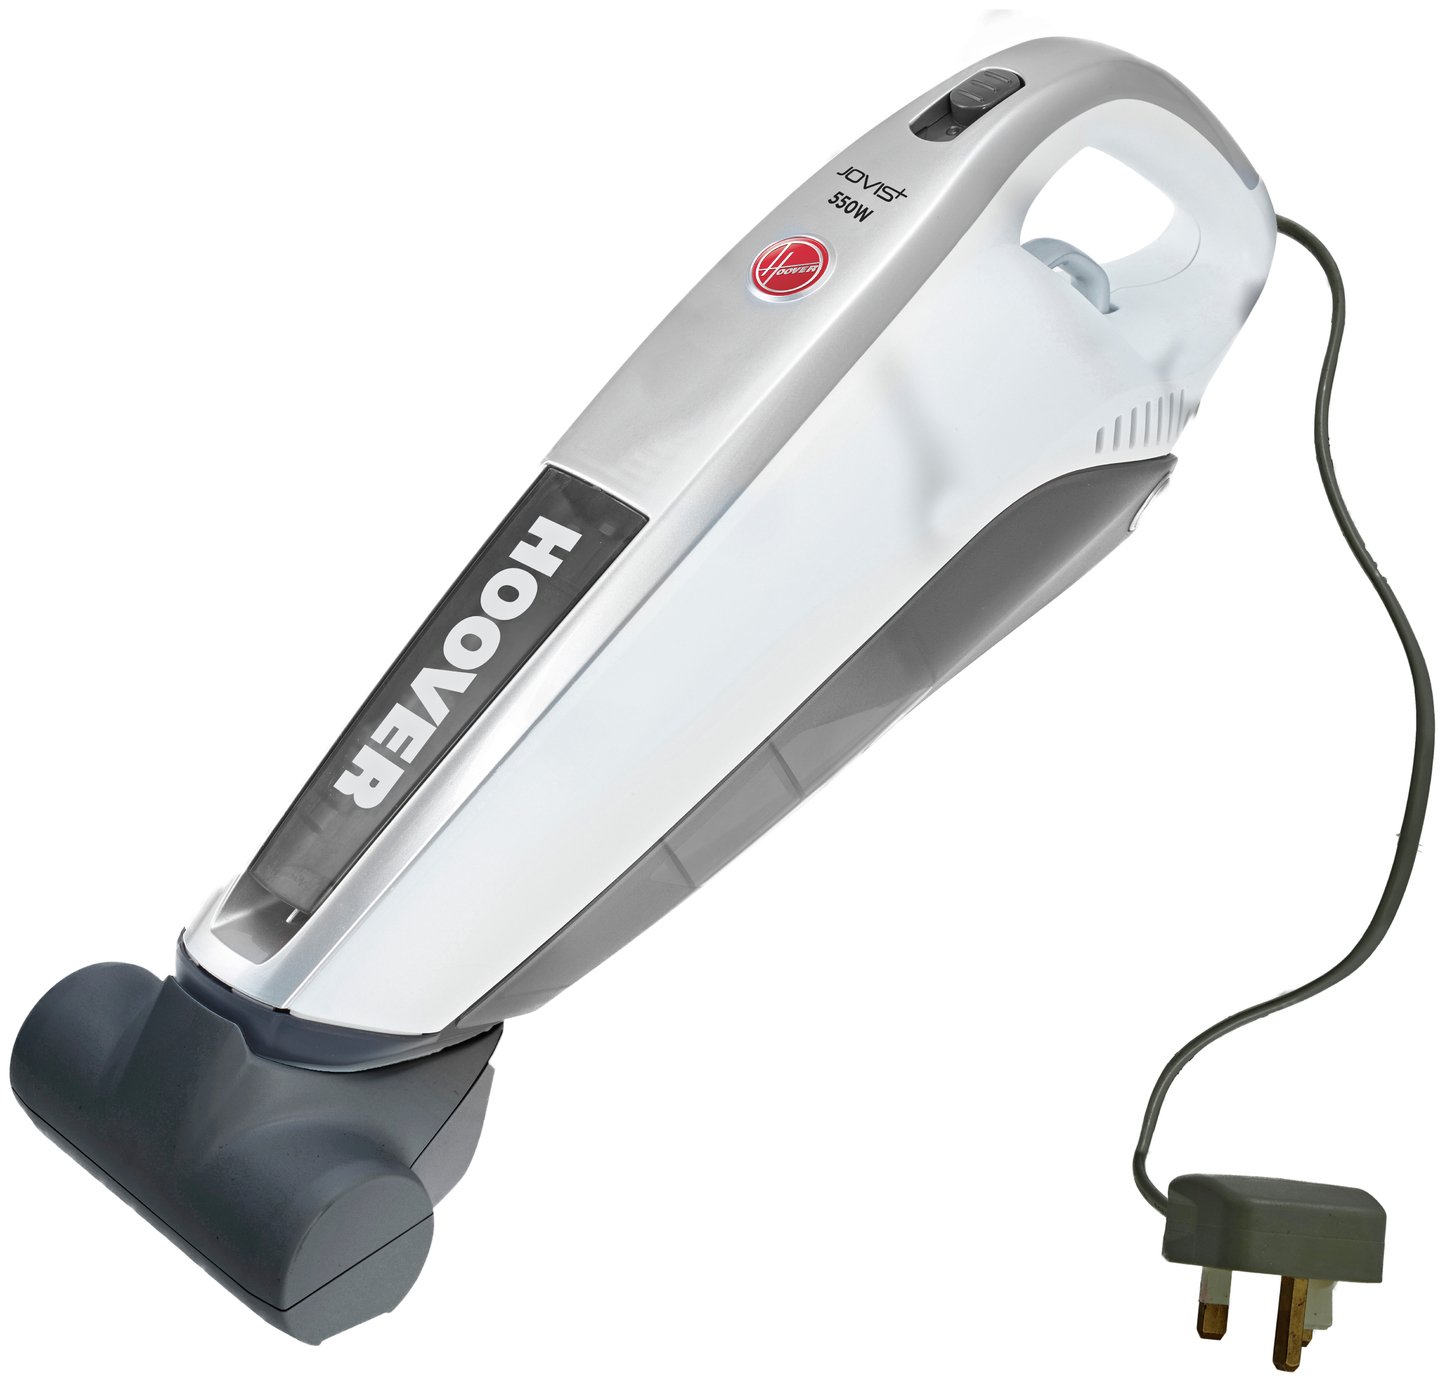 Hoover SM550AC Jovis   Pet Corded Handheld Vacuum Cleaner